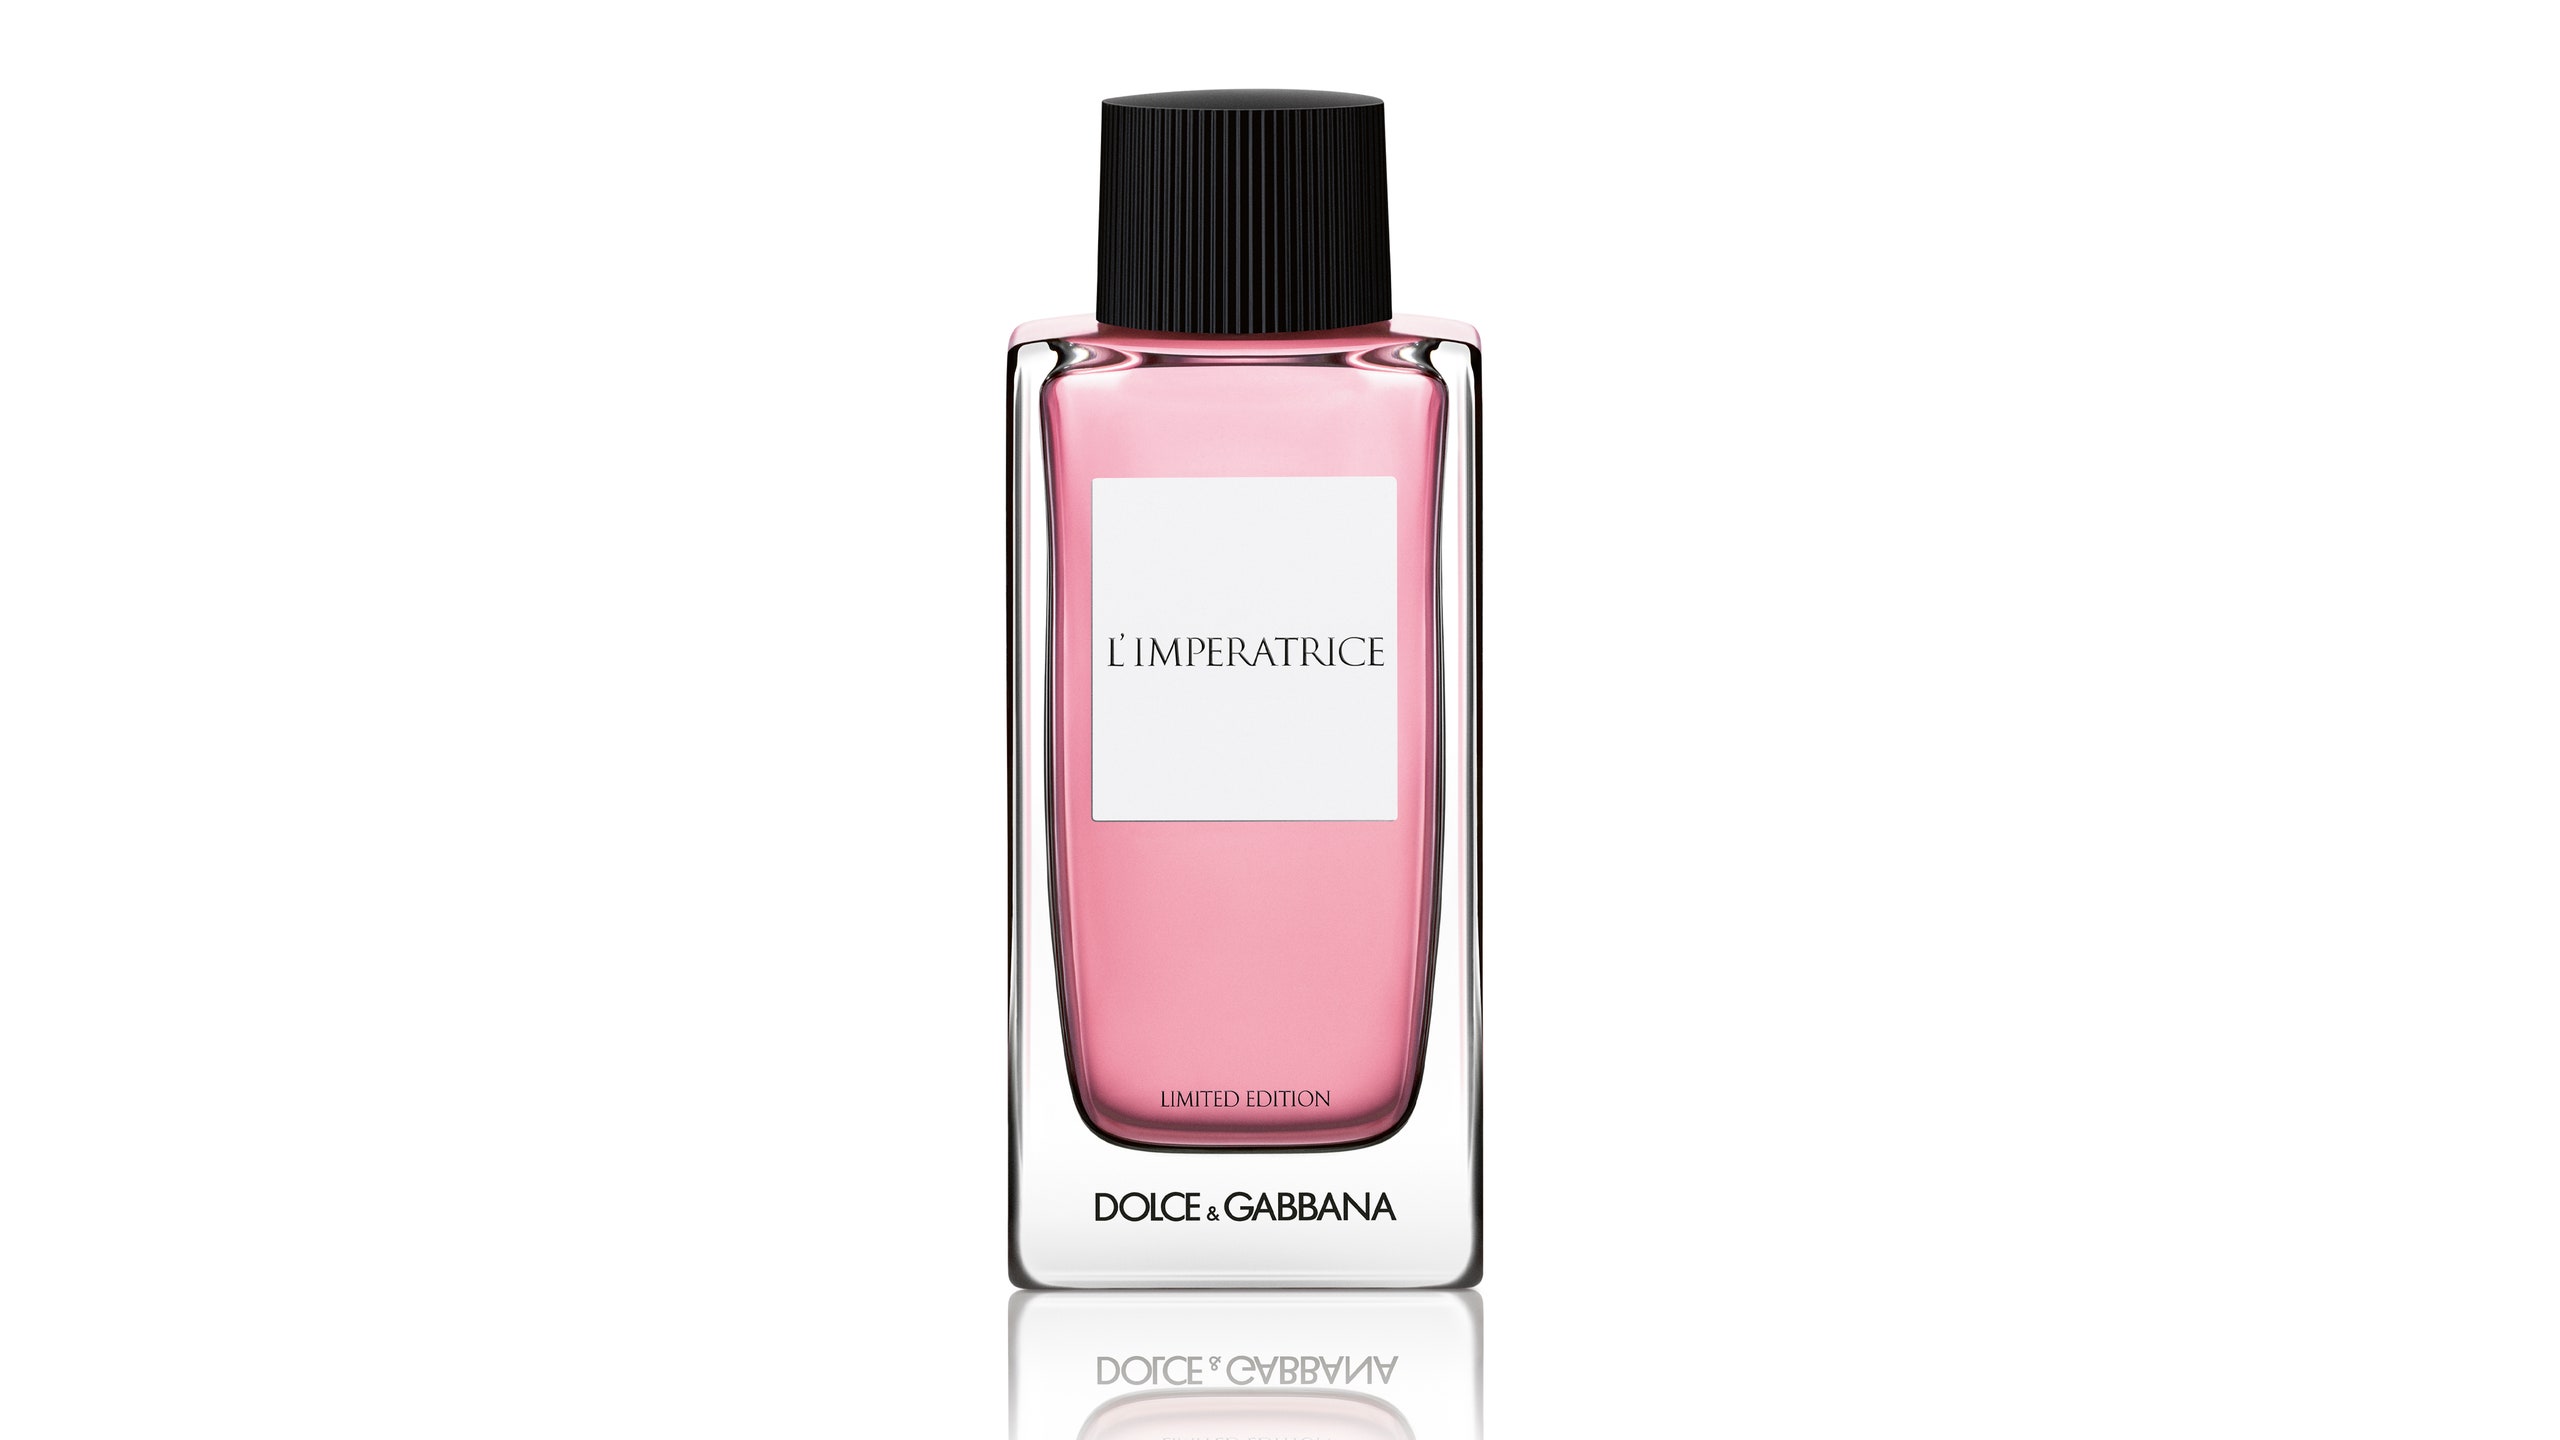 Новая версия знаменитого аромата LImperatrice от Dolce  Gabbana будет представлена только в России